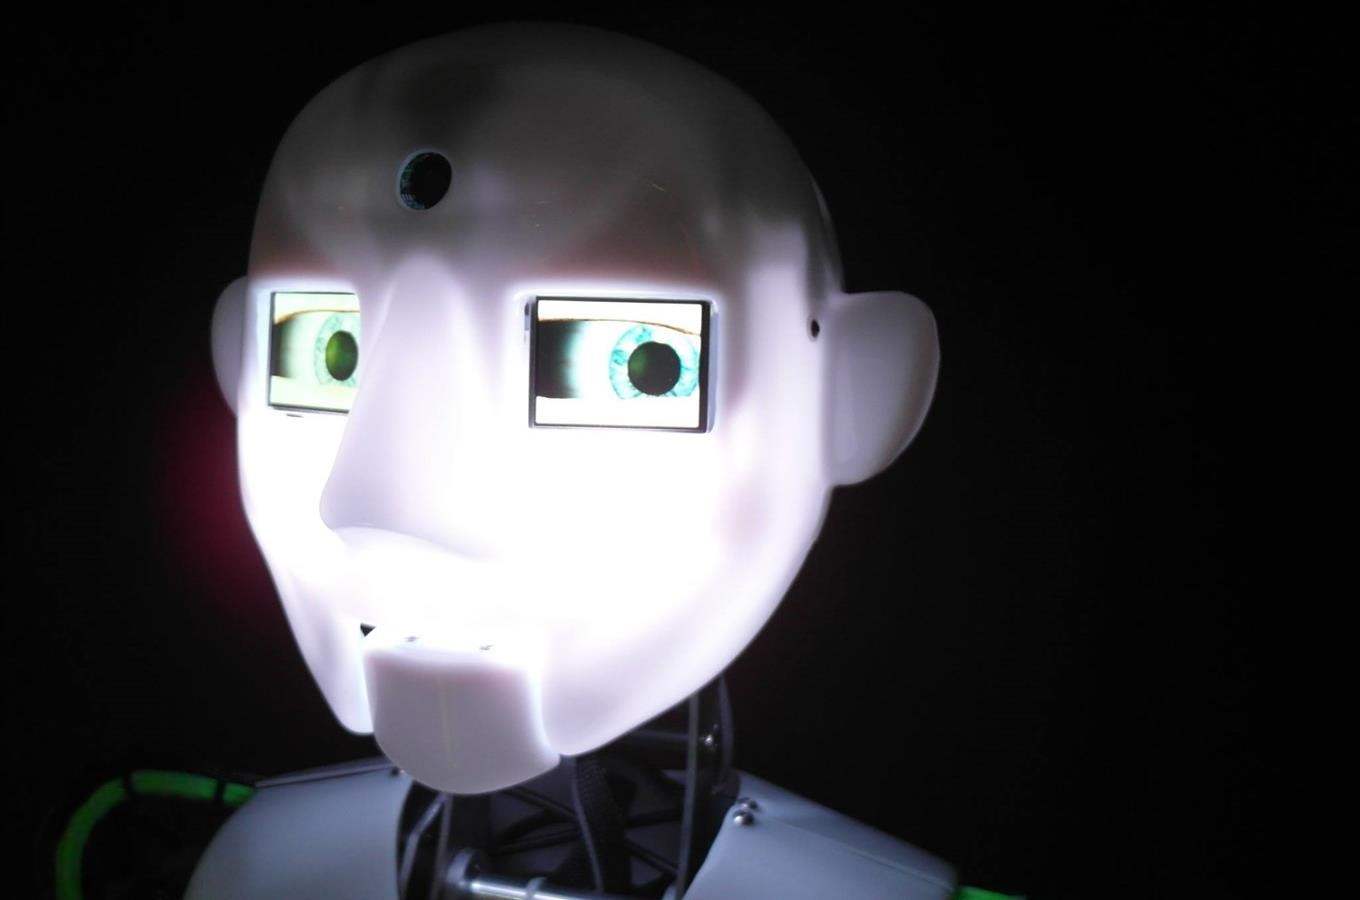 V iQlandii potkáte prvního humanoidního robota v CR